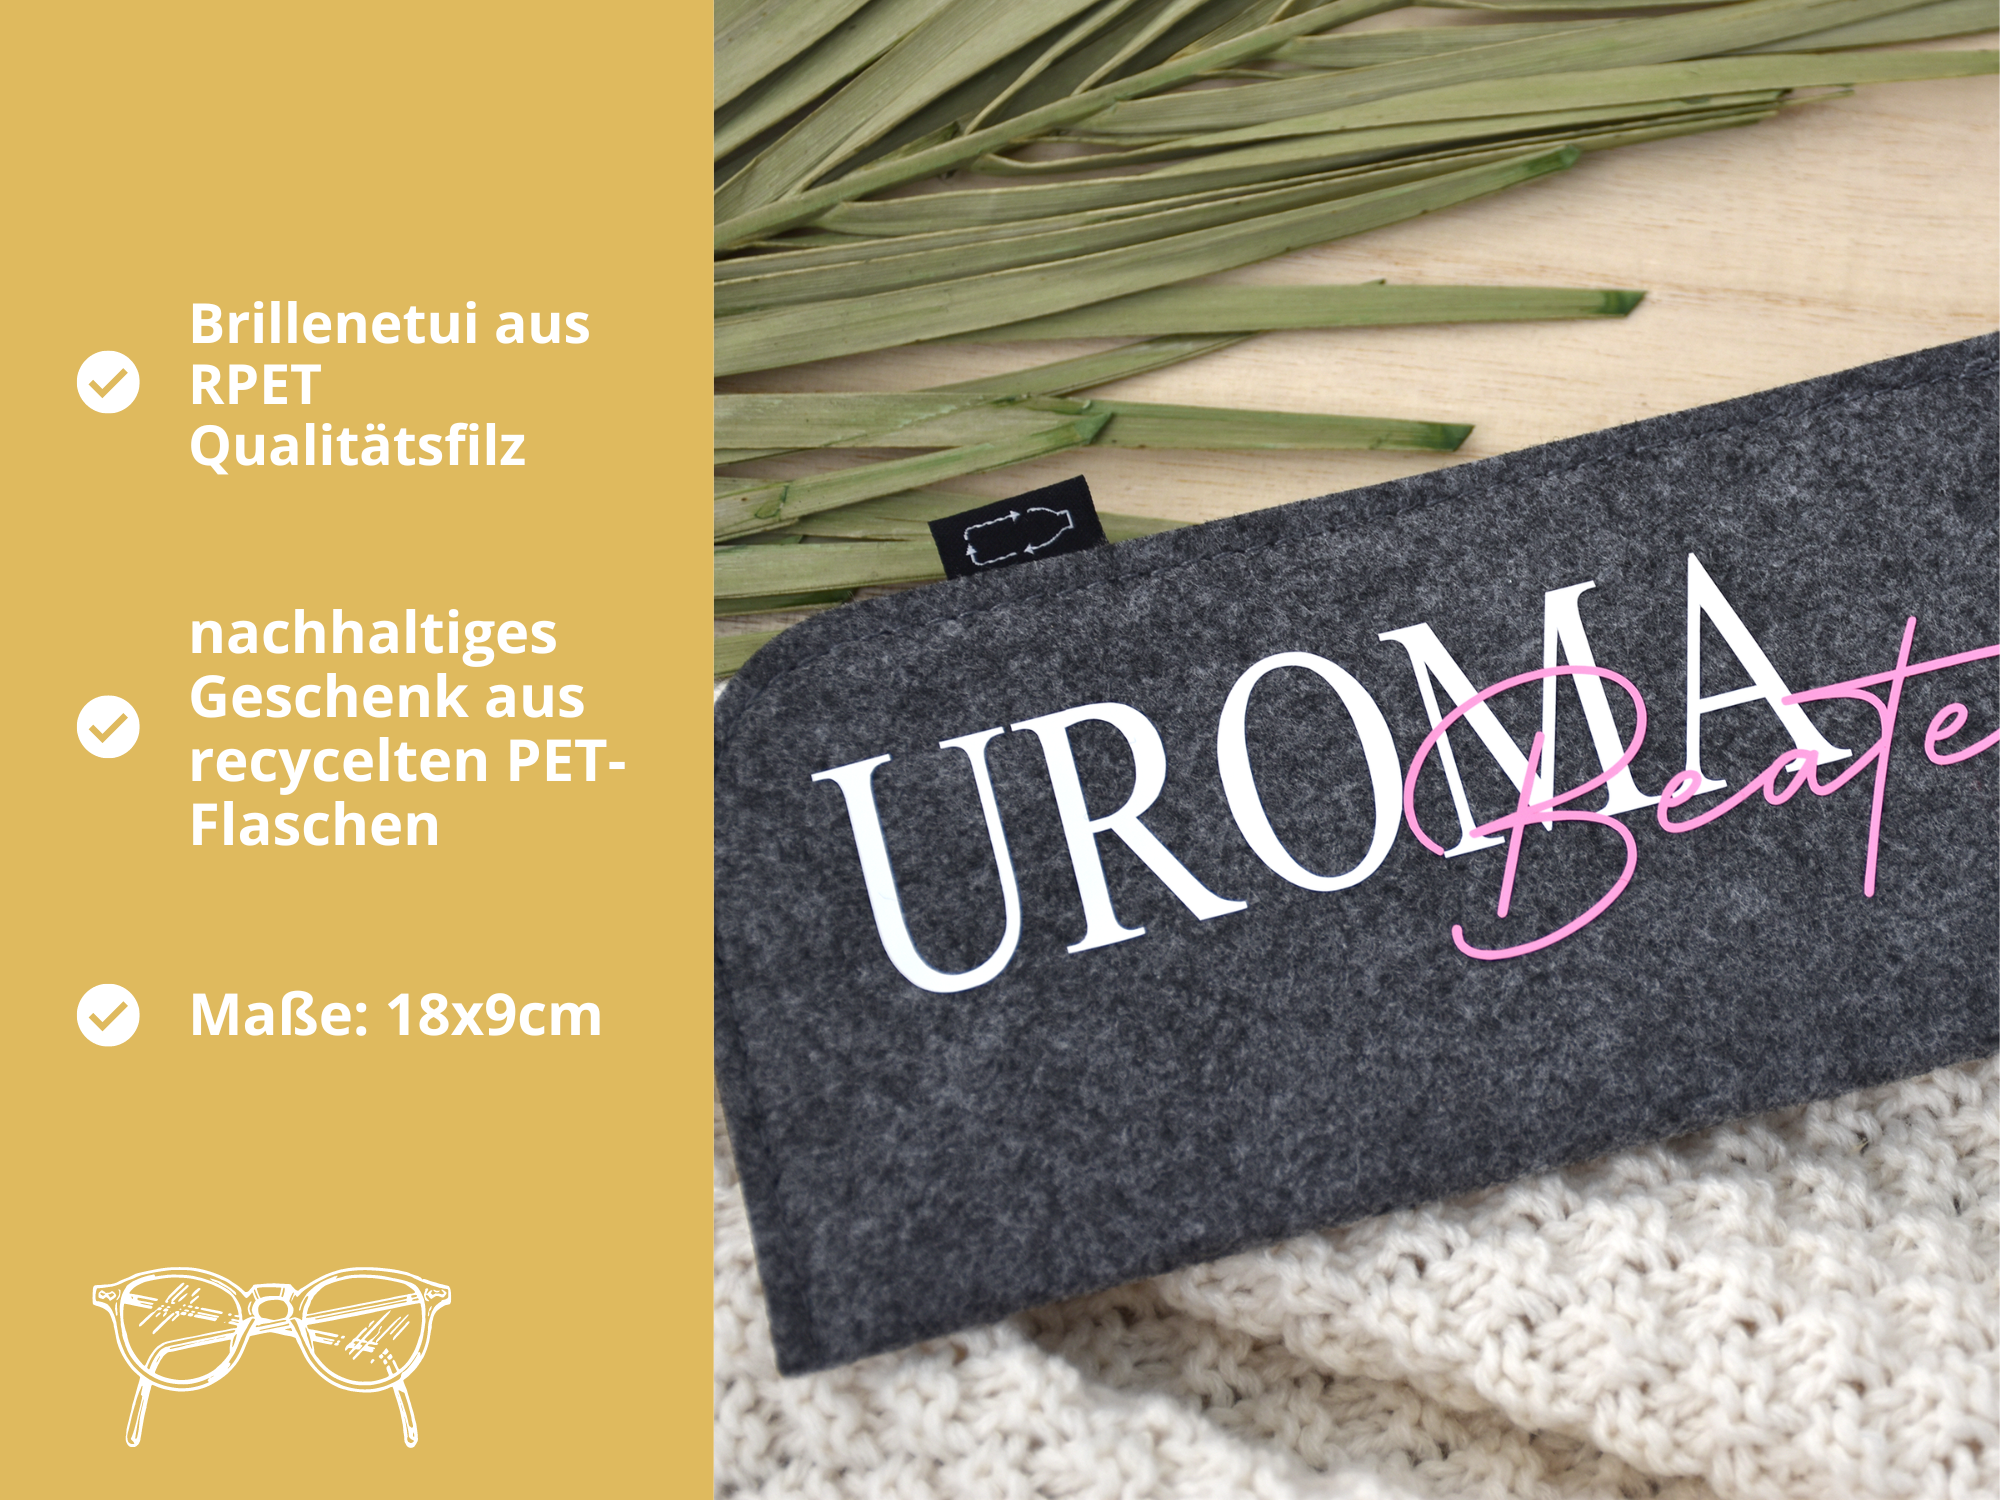 Brillenetui "Uroma" mit Namen | personalisierte Brillentasche aus Filz - BeBonnie